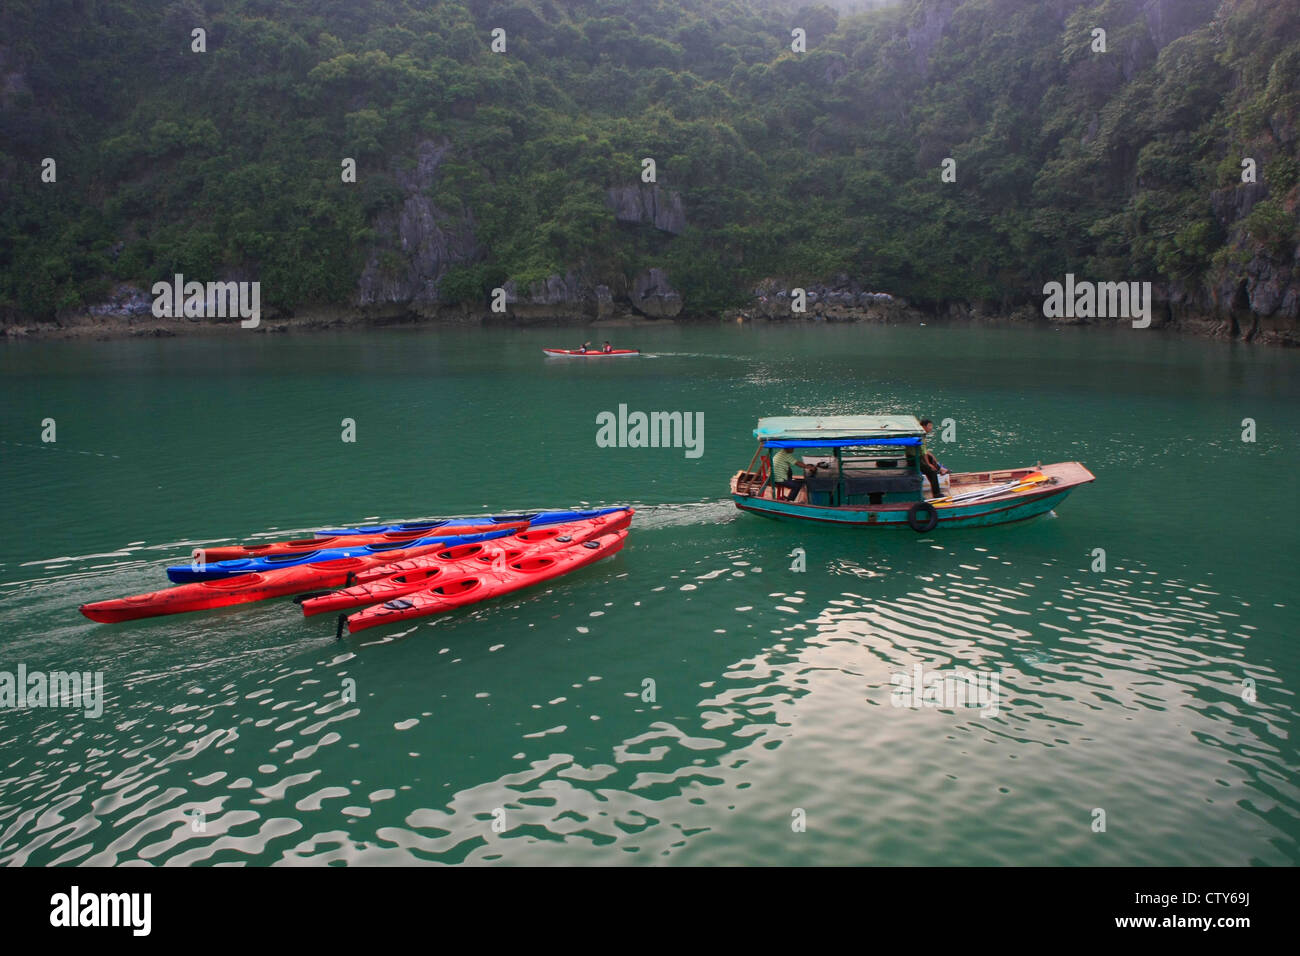 Small boat towing colorful kayaks, Halong Bay, Vietnam Stock Photo